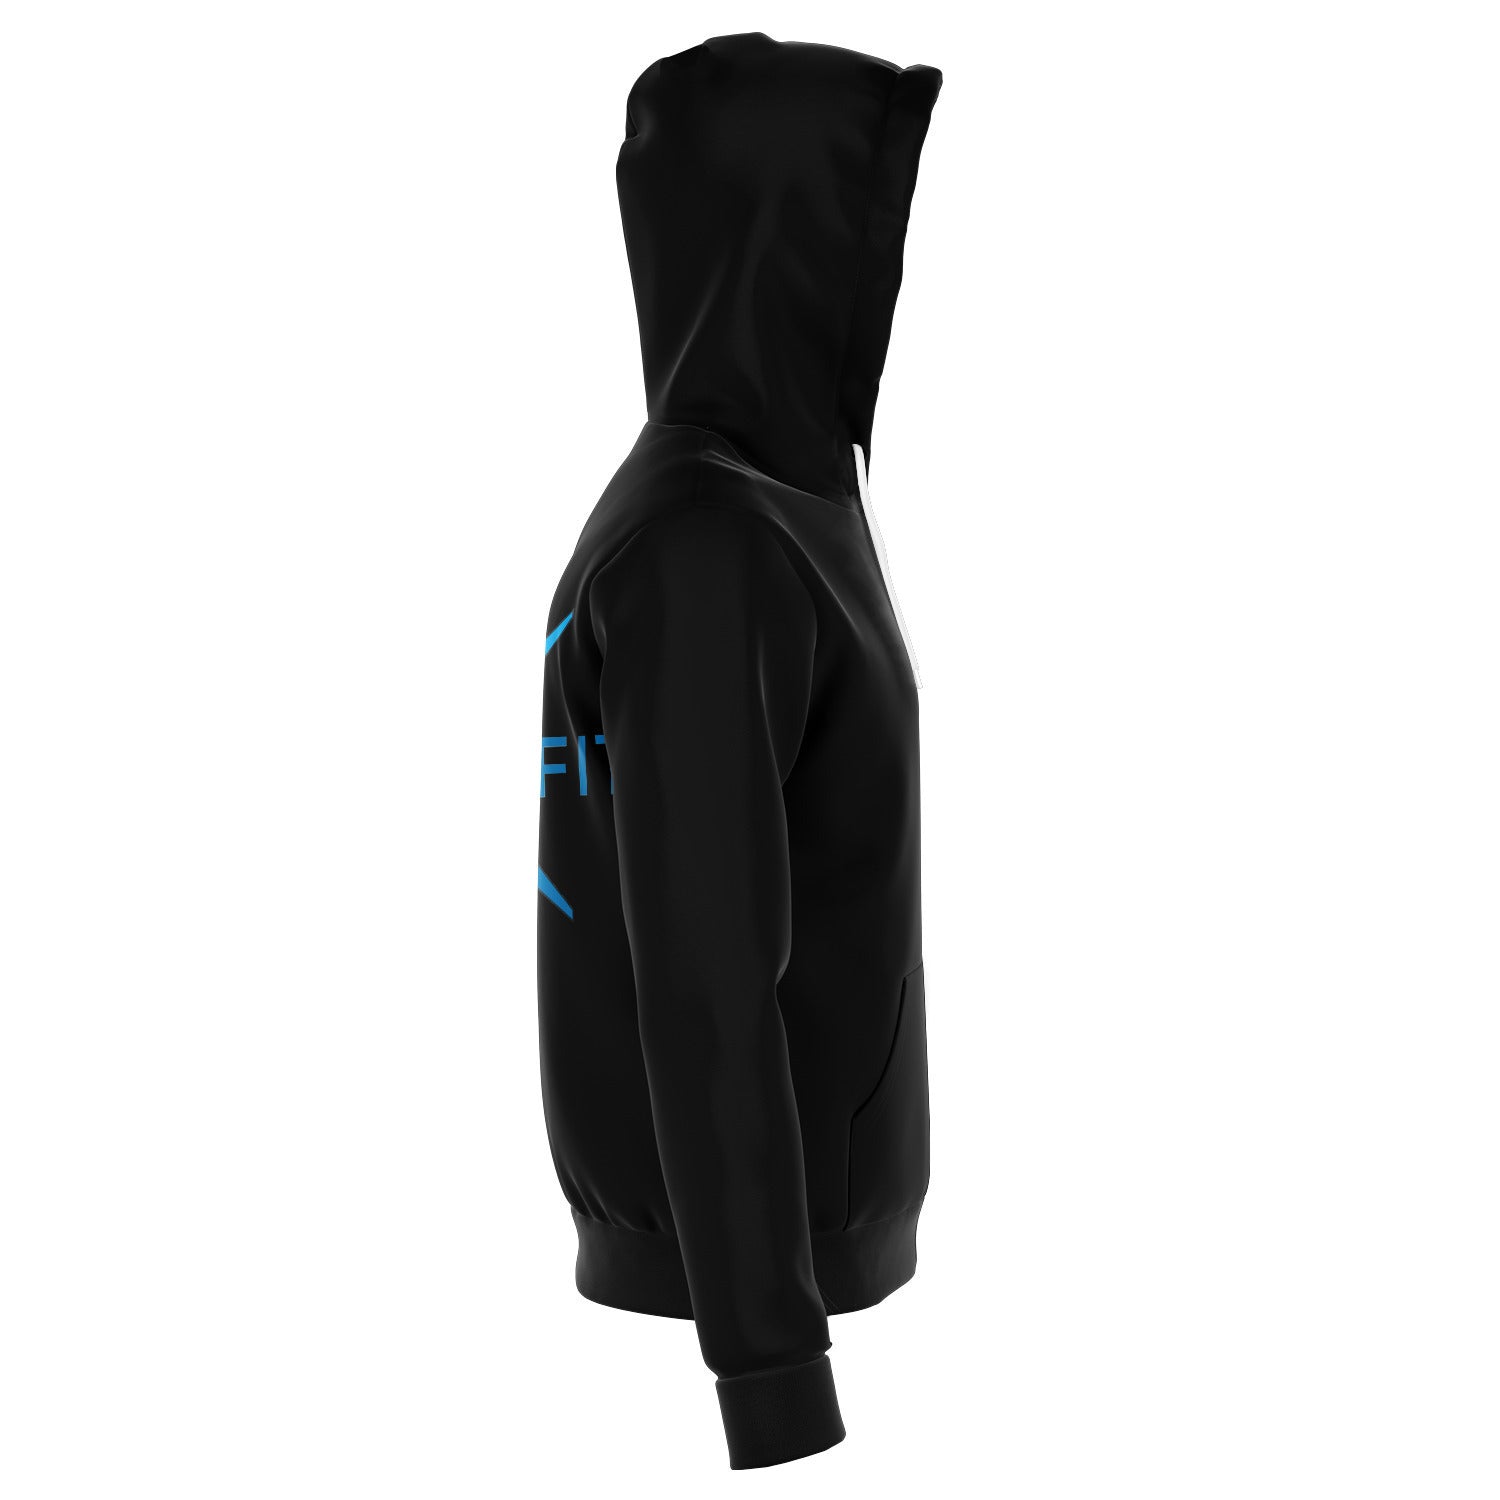 lifefit zip hoodie